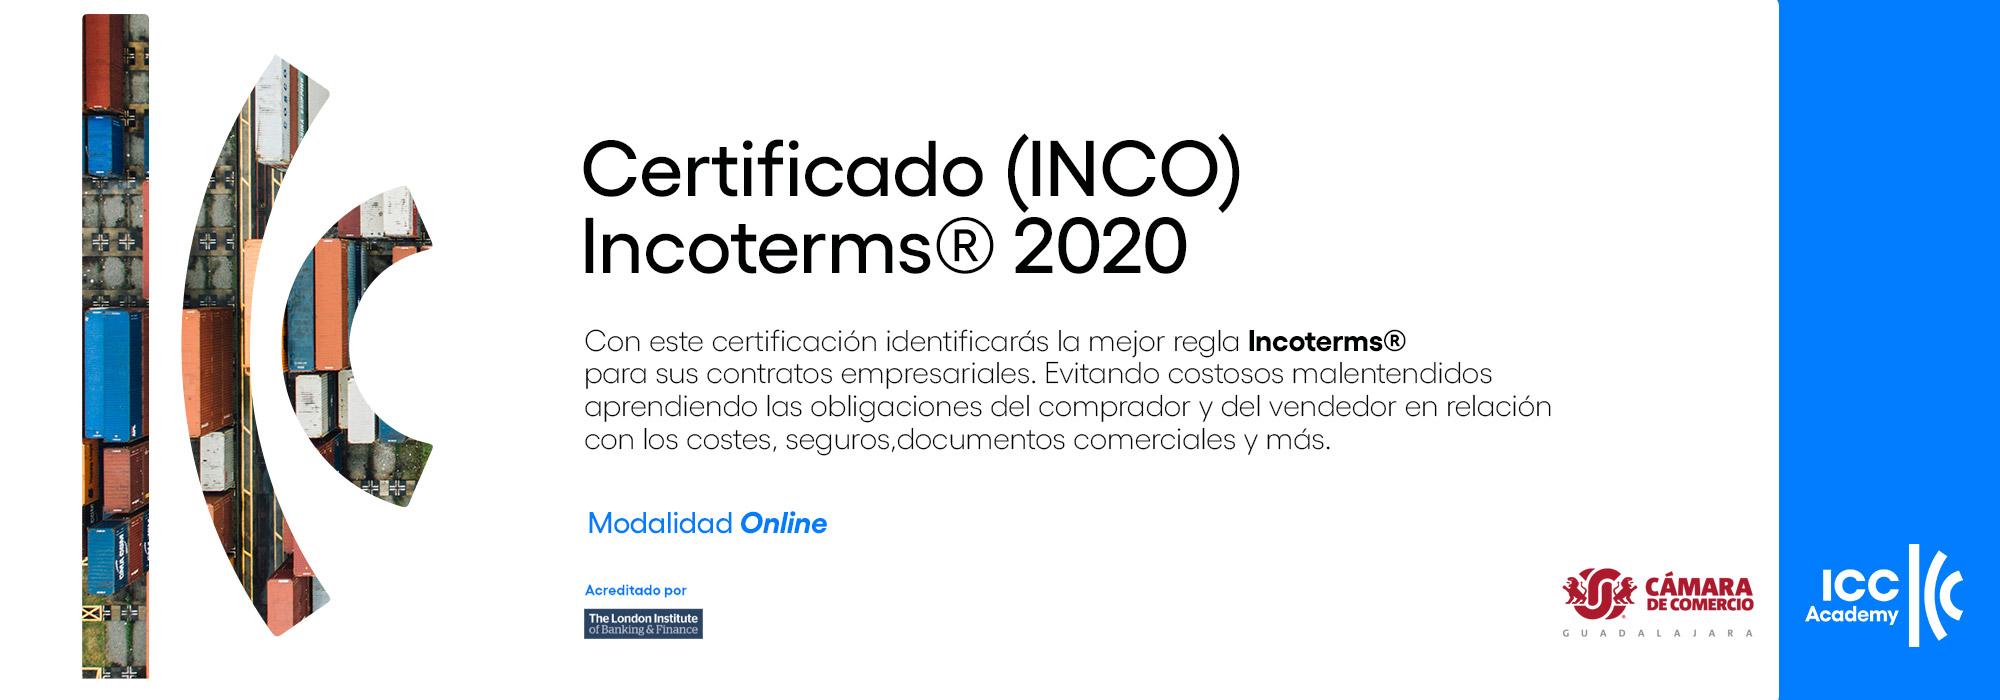 Certificacion INCO